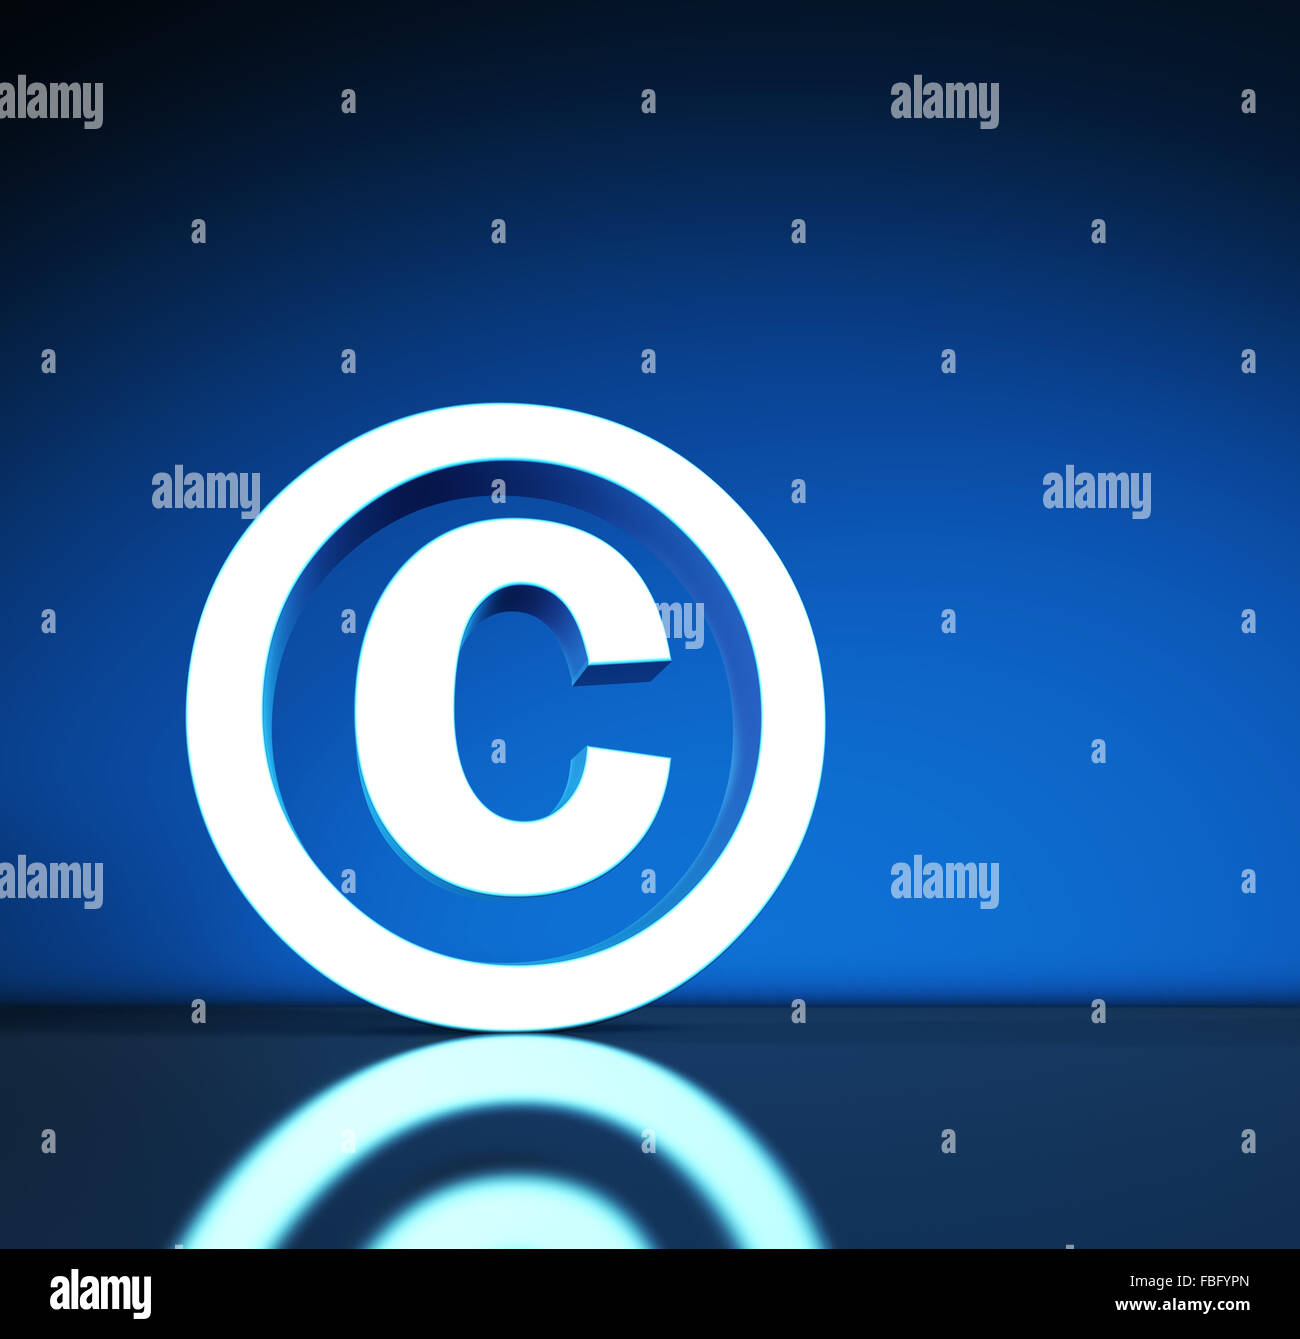 La propriété intellectuelle et les lois sur le droit d'auteur numérique illustration conceptuelle avec symbole de copyright et de l'icône sur fond bleu. Banque D'Images